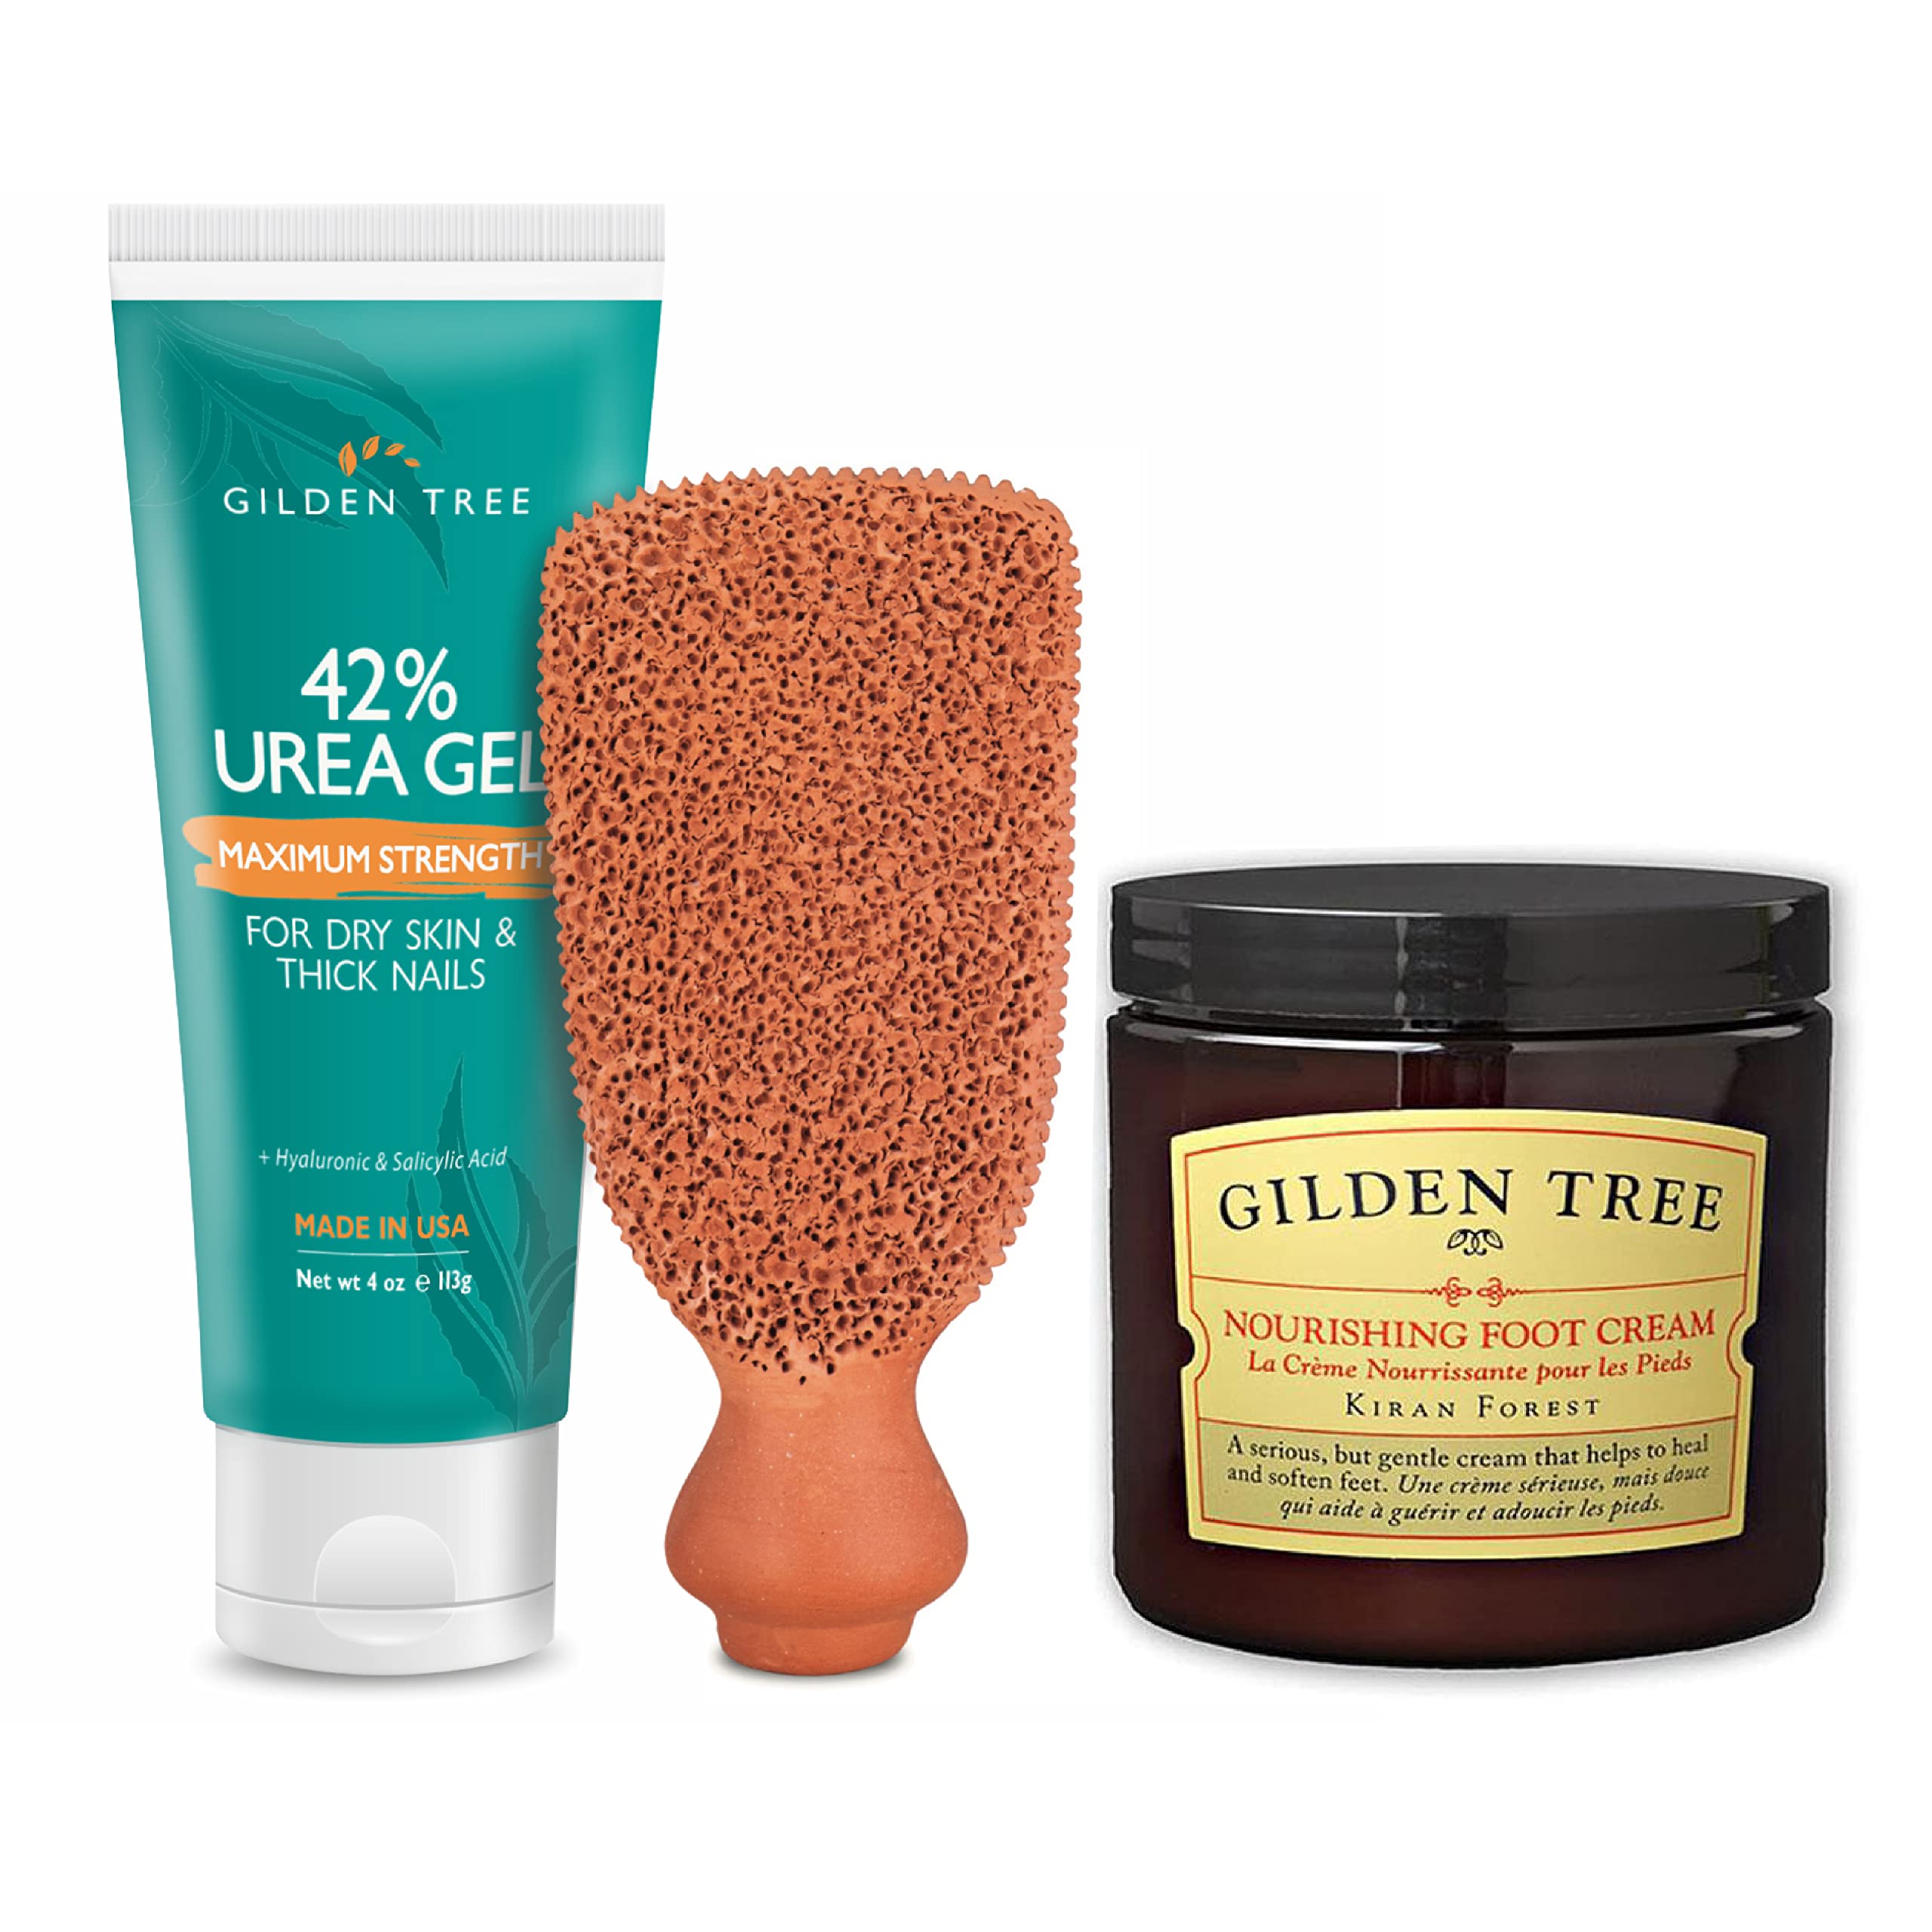 GILDEN TREE Nourishing Foot Cream + Max Strength 42% Urea Gel + Foot Scrubber